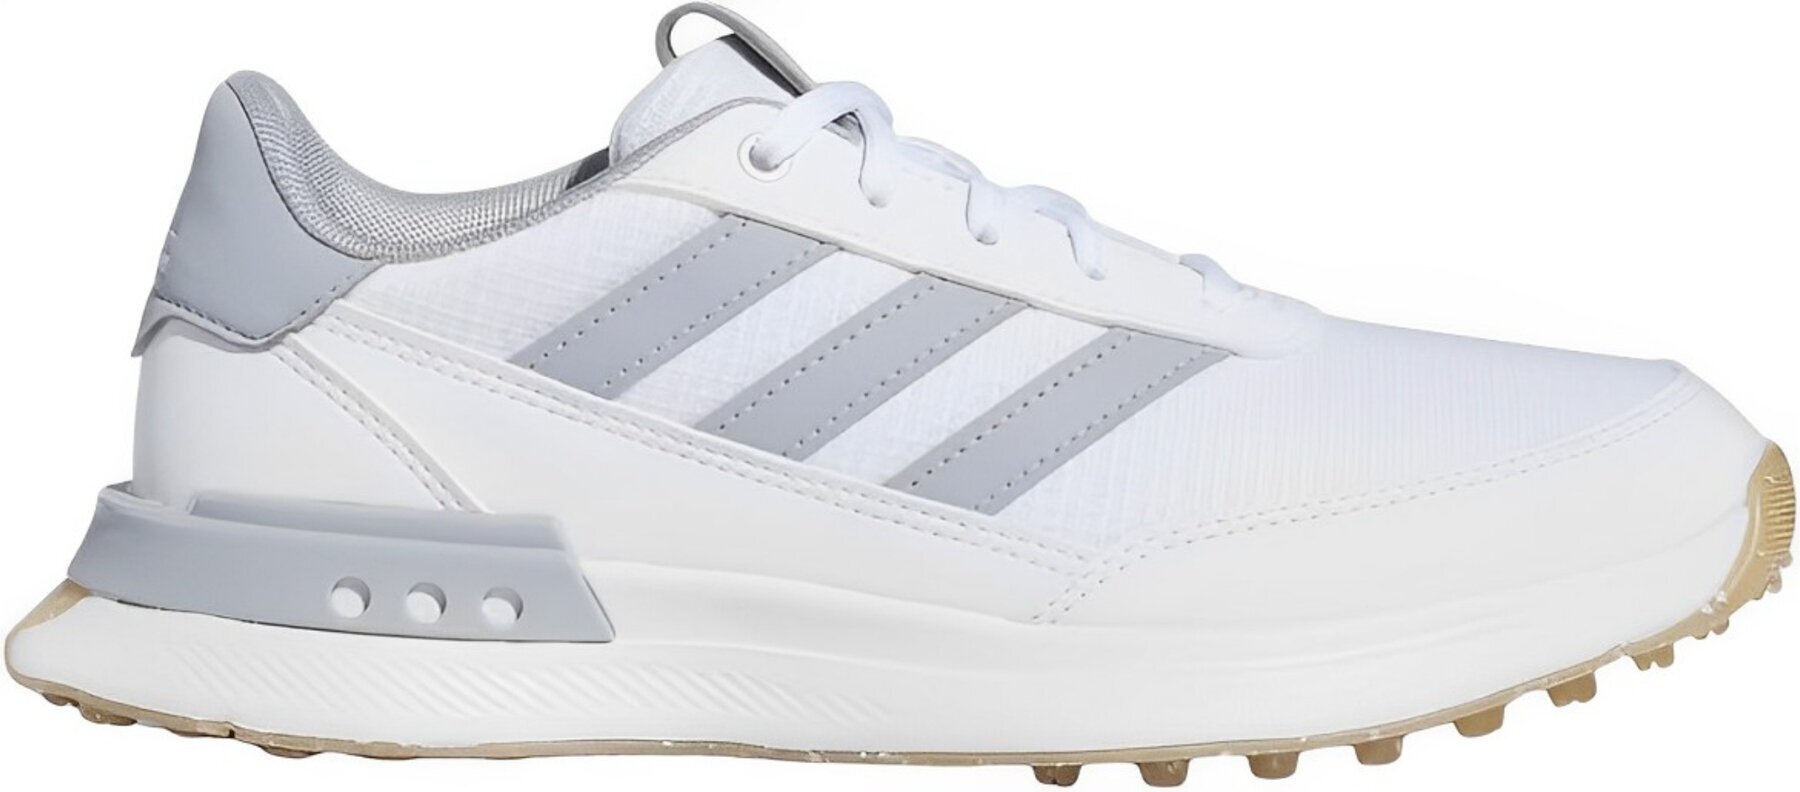 Calzado de golf junior Adidas S2G Spikeless 24 Junior Golf Shoes White/Halo Silver/Gum 37 1/3 Calzado de golf junior